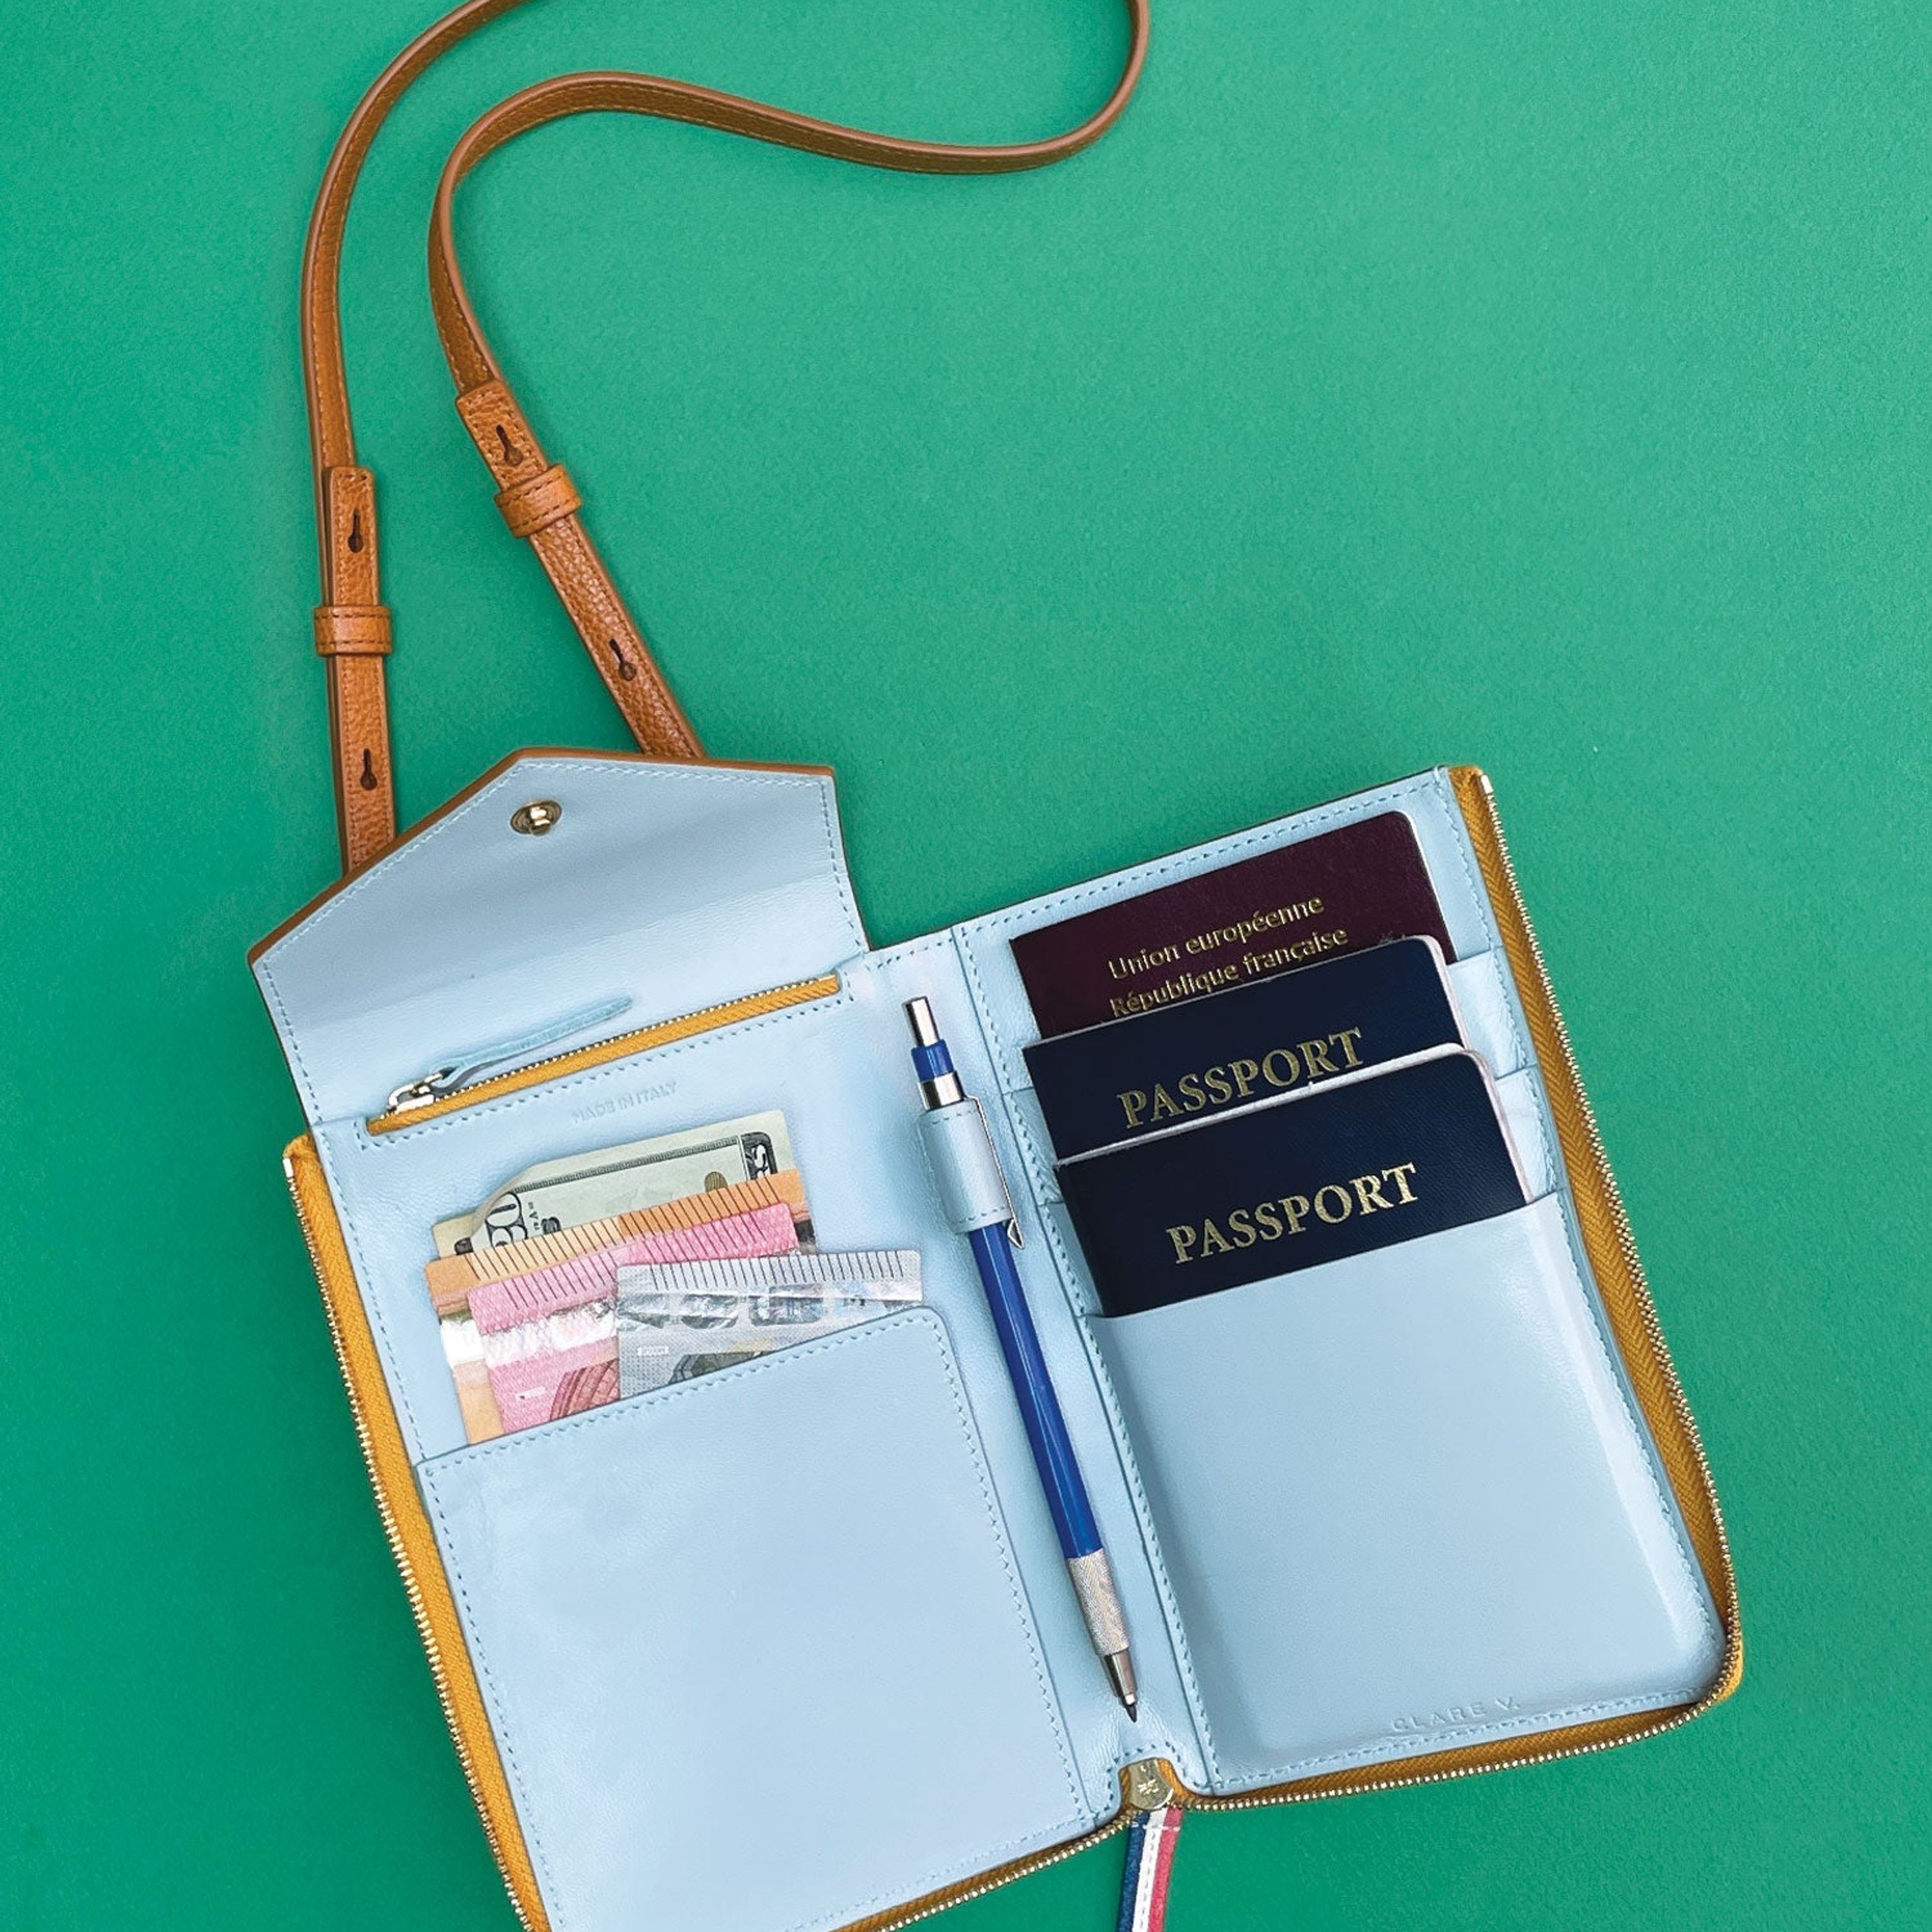 Jimmy Kimmel's “Airport Dad” Passport Case